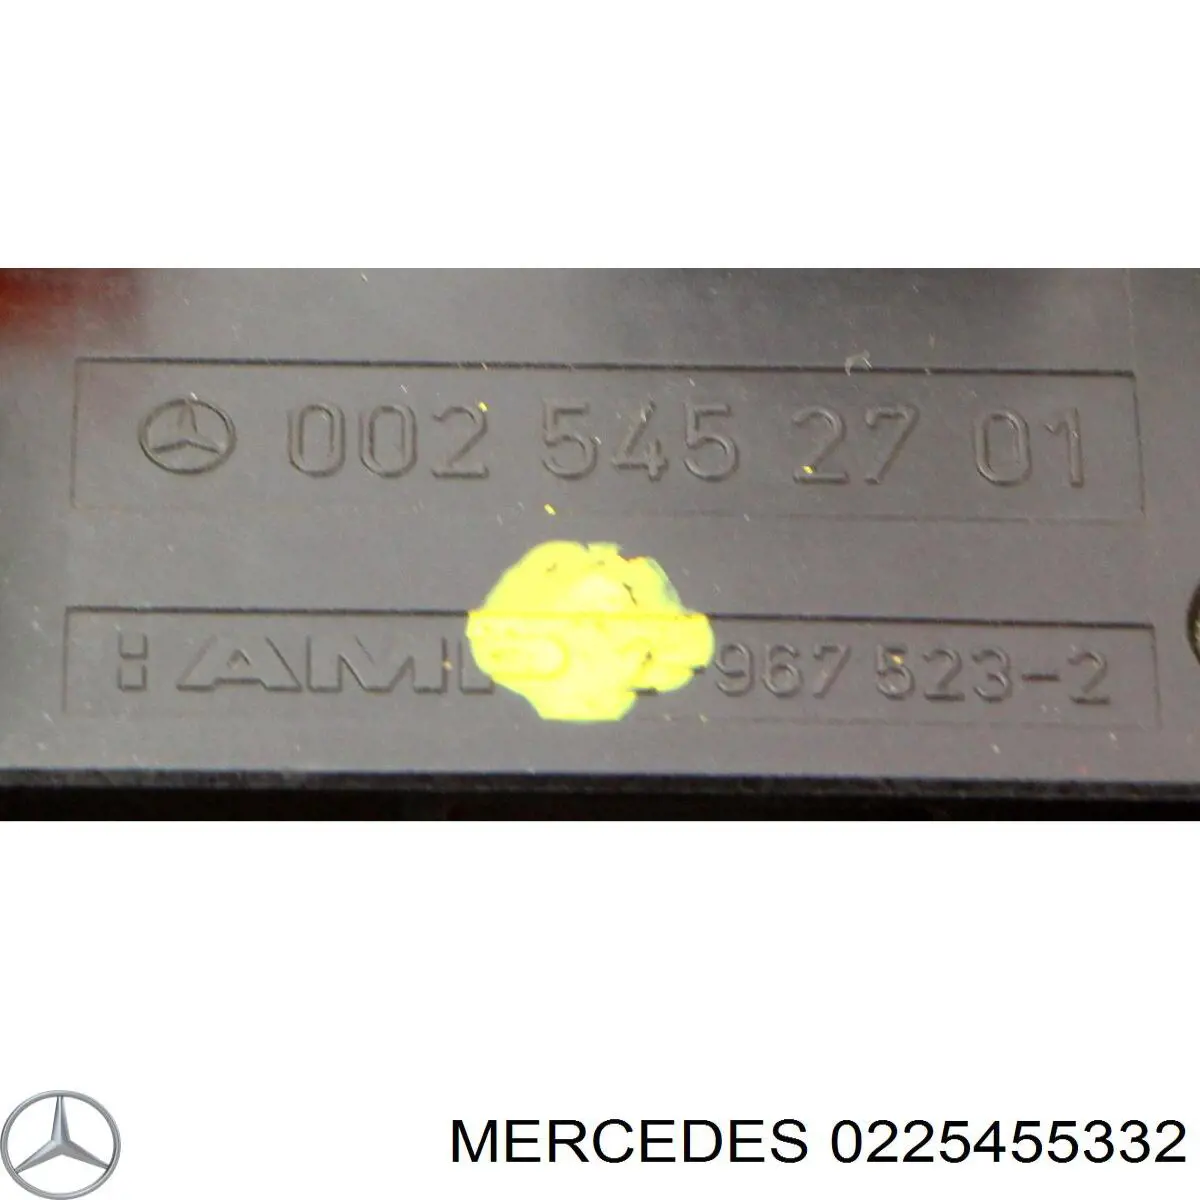 0225455332 Mercedes блок управления сигналами sam